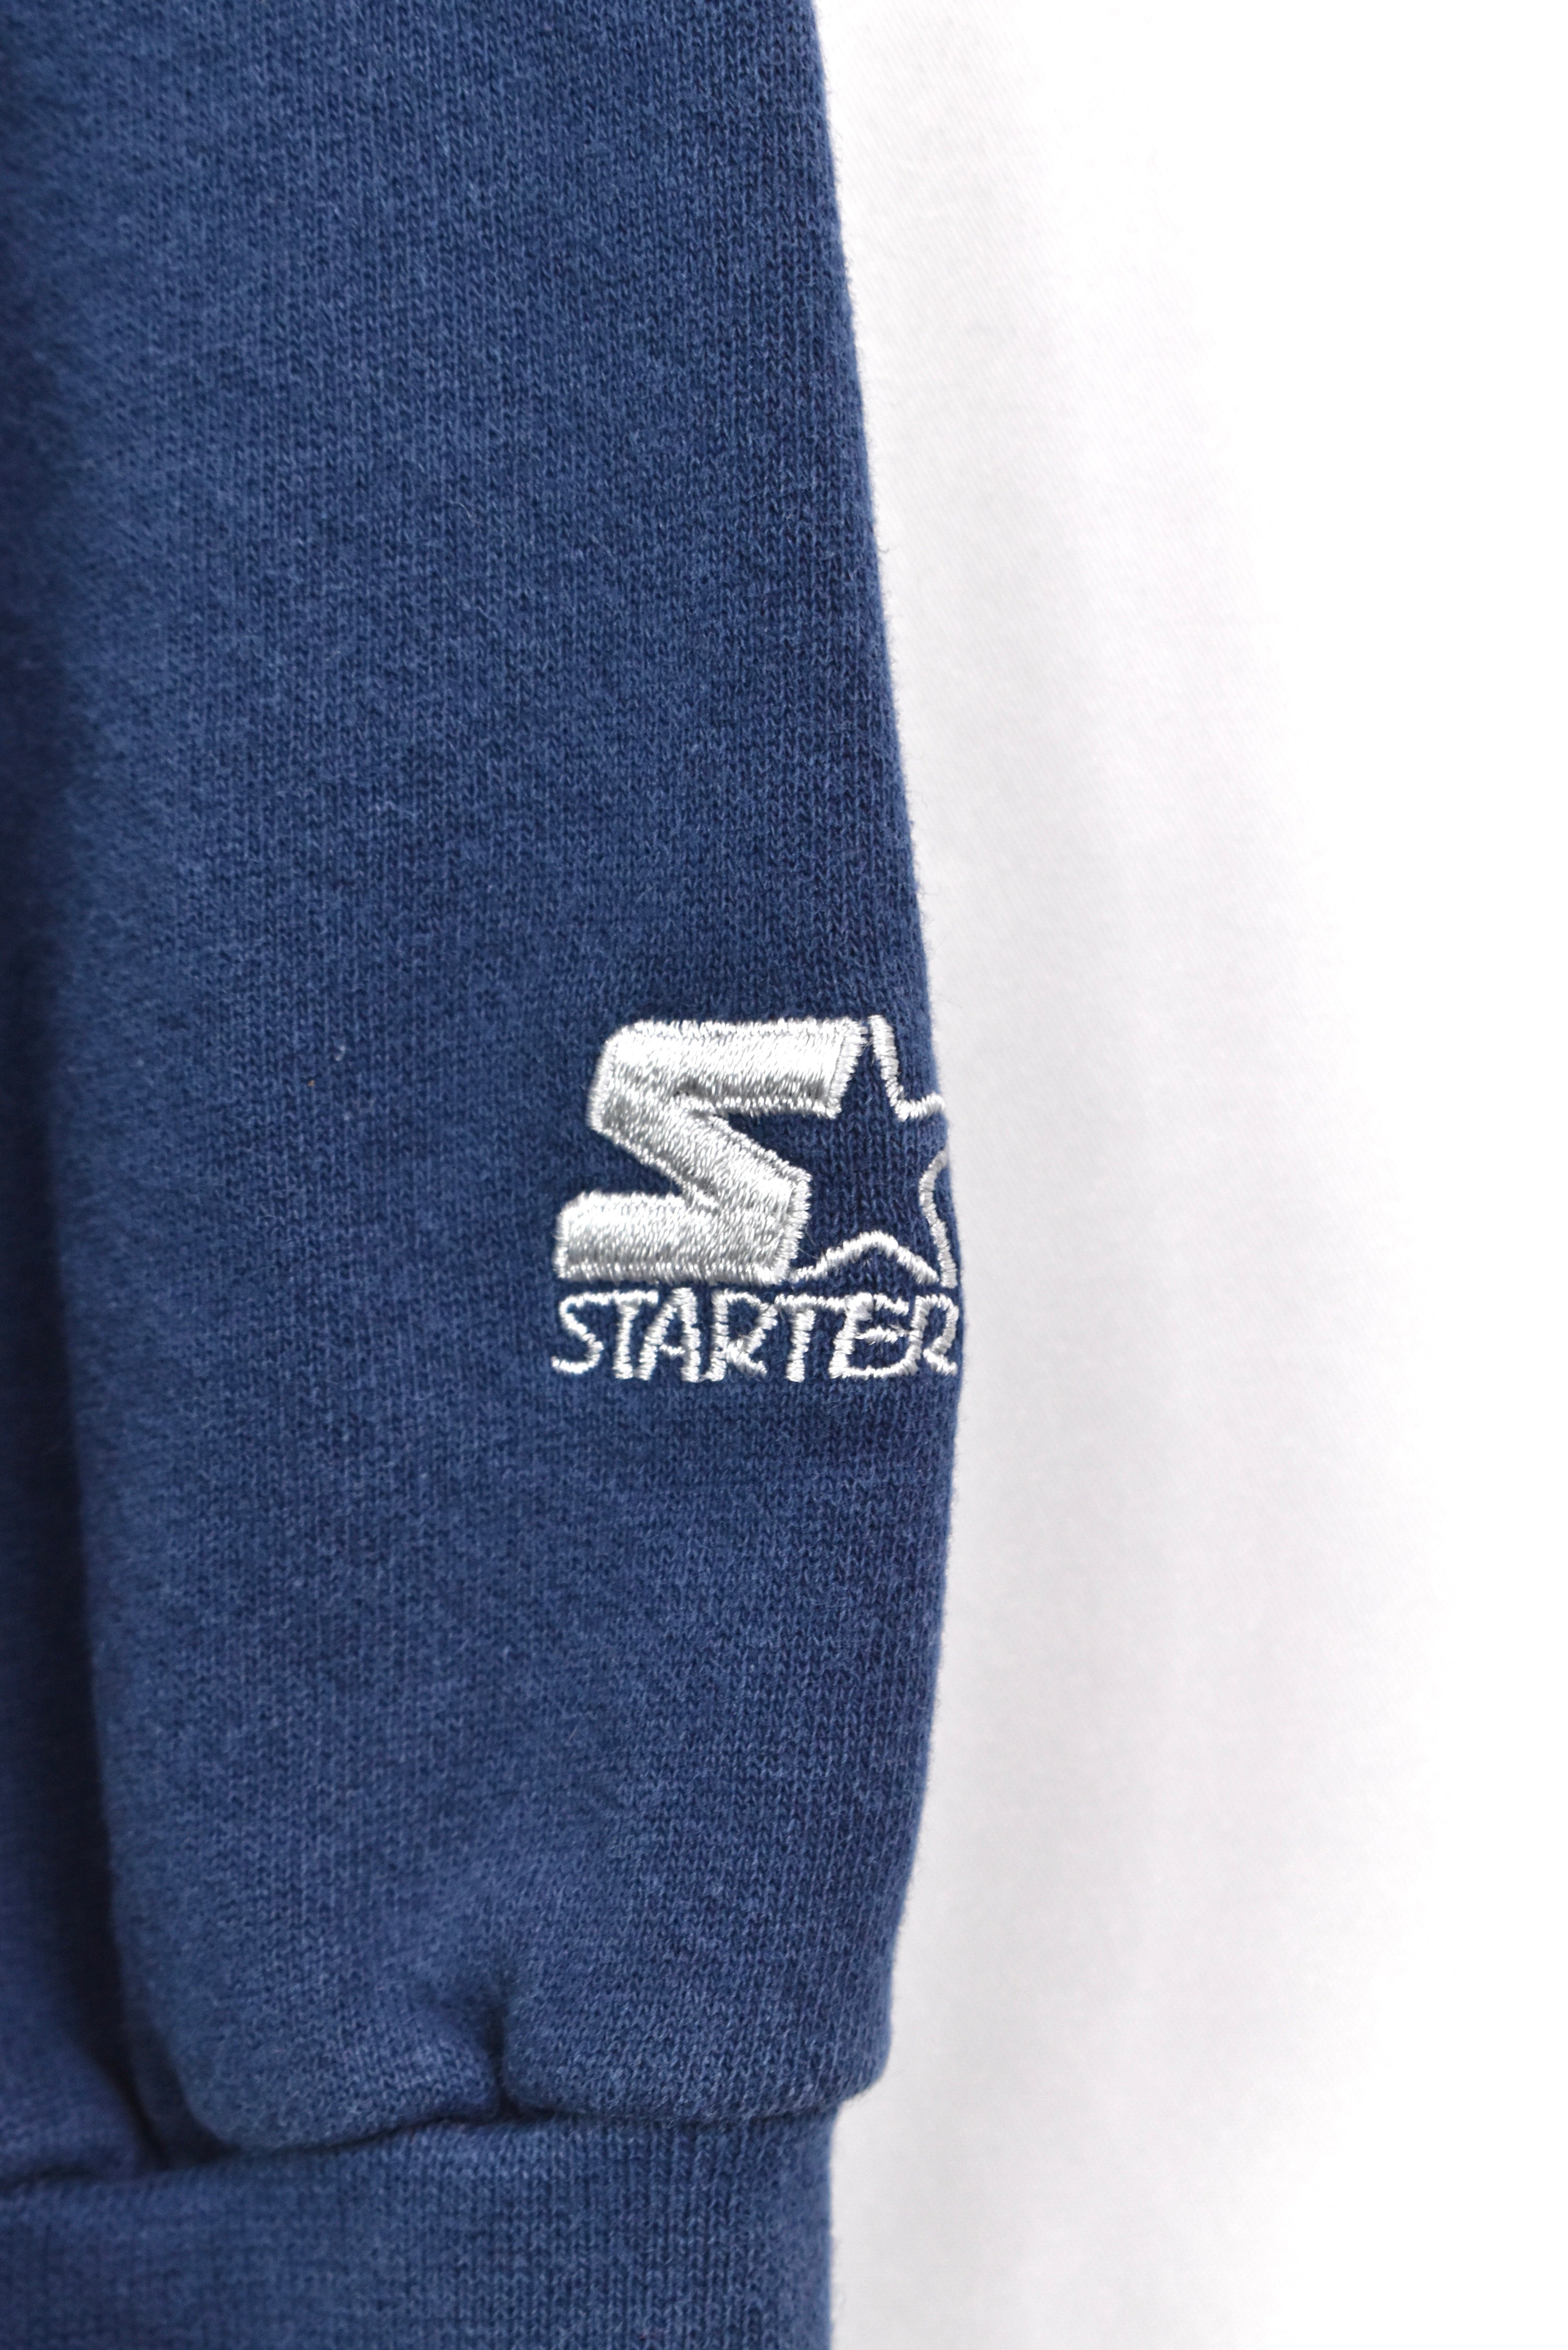 Vintage Denver Broncos sweatshirt, NFL navy blue graphic crewneck - AU XL PRO SPORT